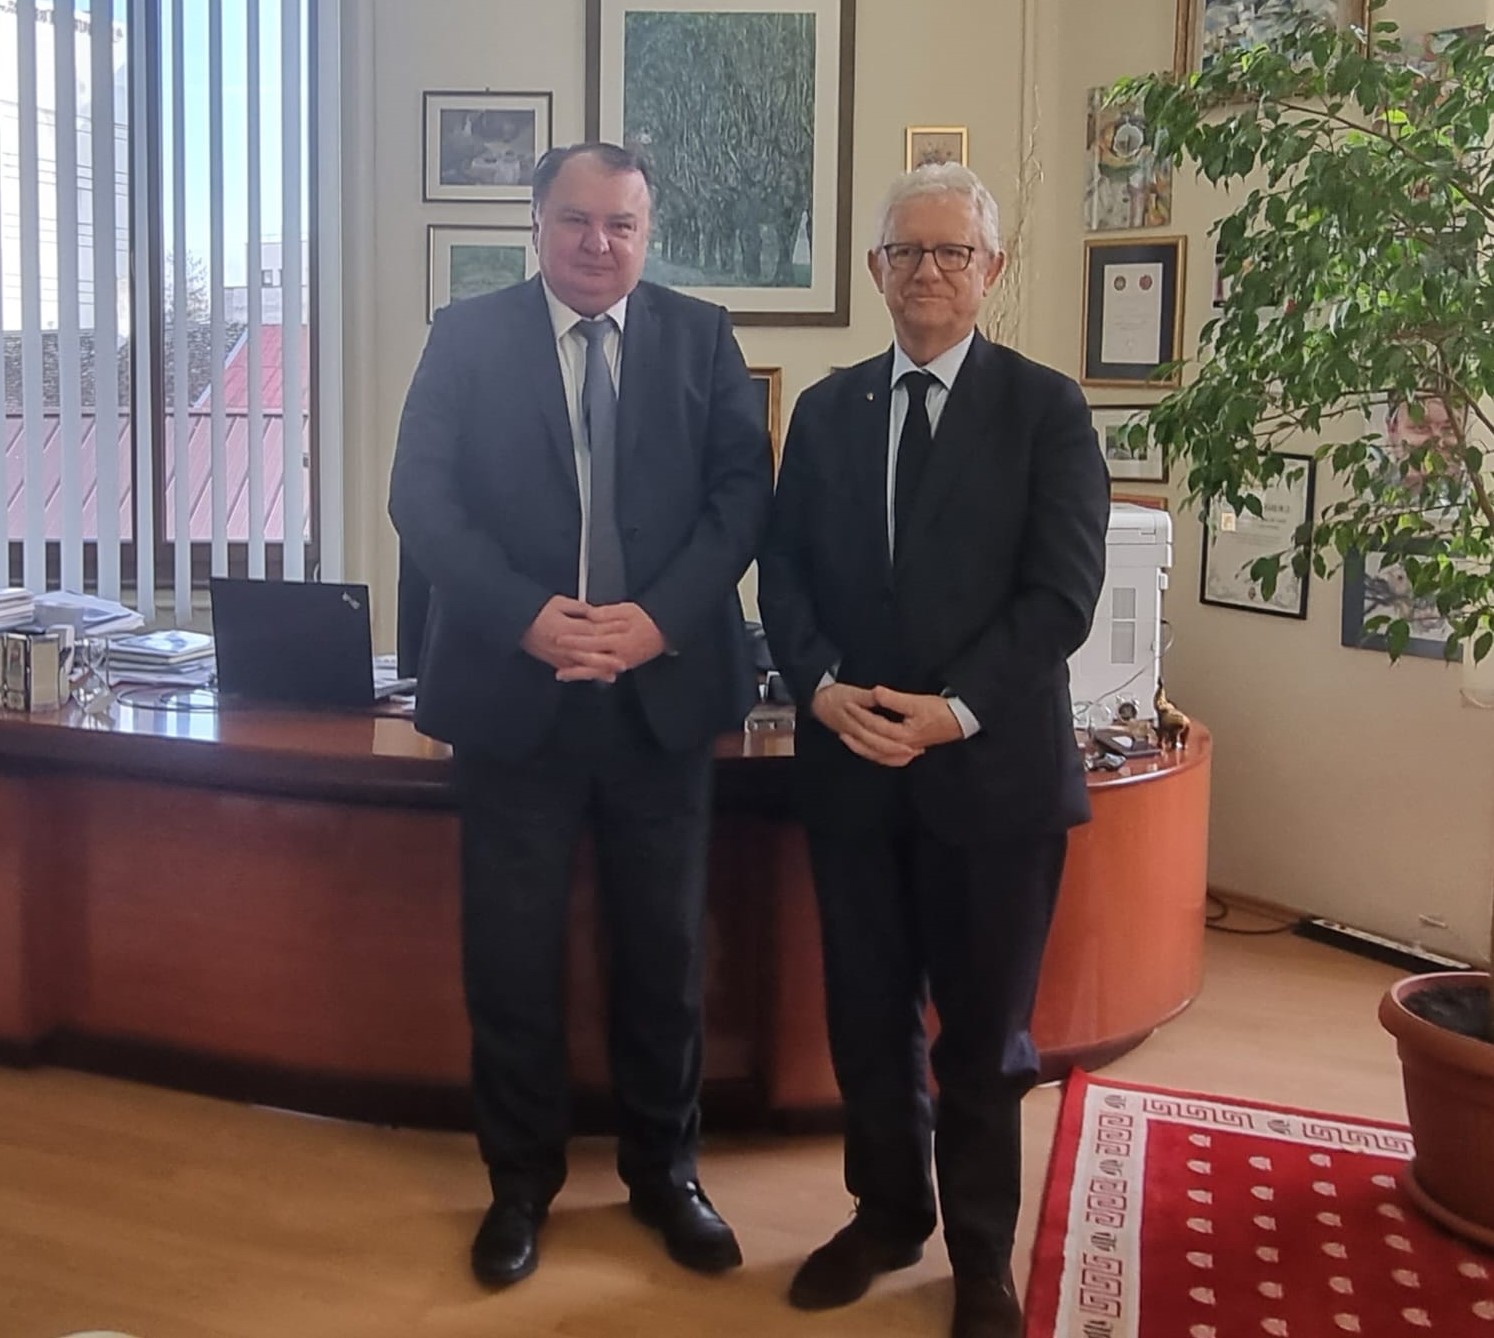 rectorul utcn s-a întâlnit cu prof.dr. monsenior patrick valdrini, personalitate academică europeană